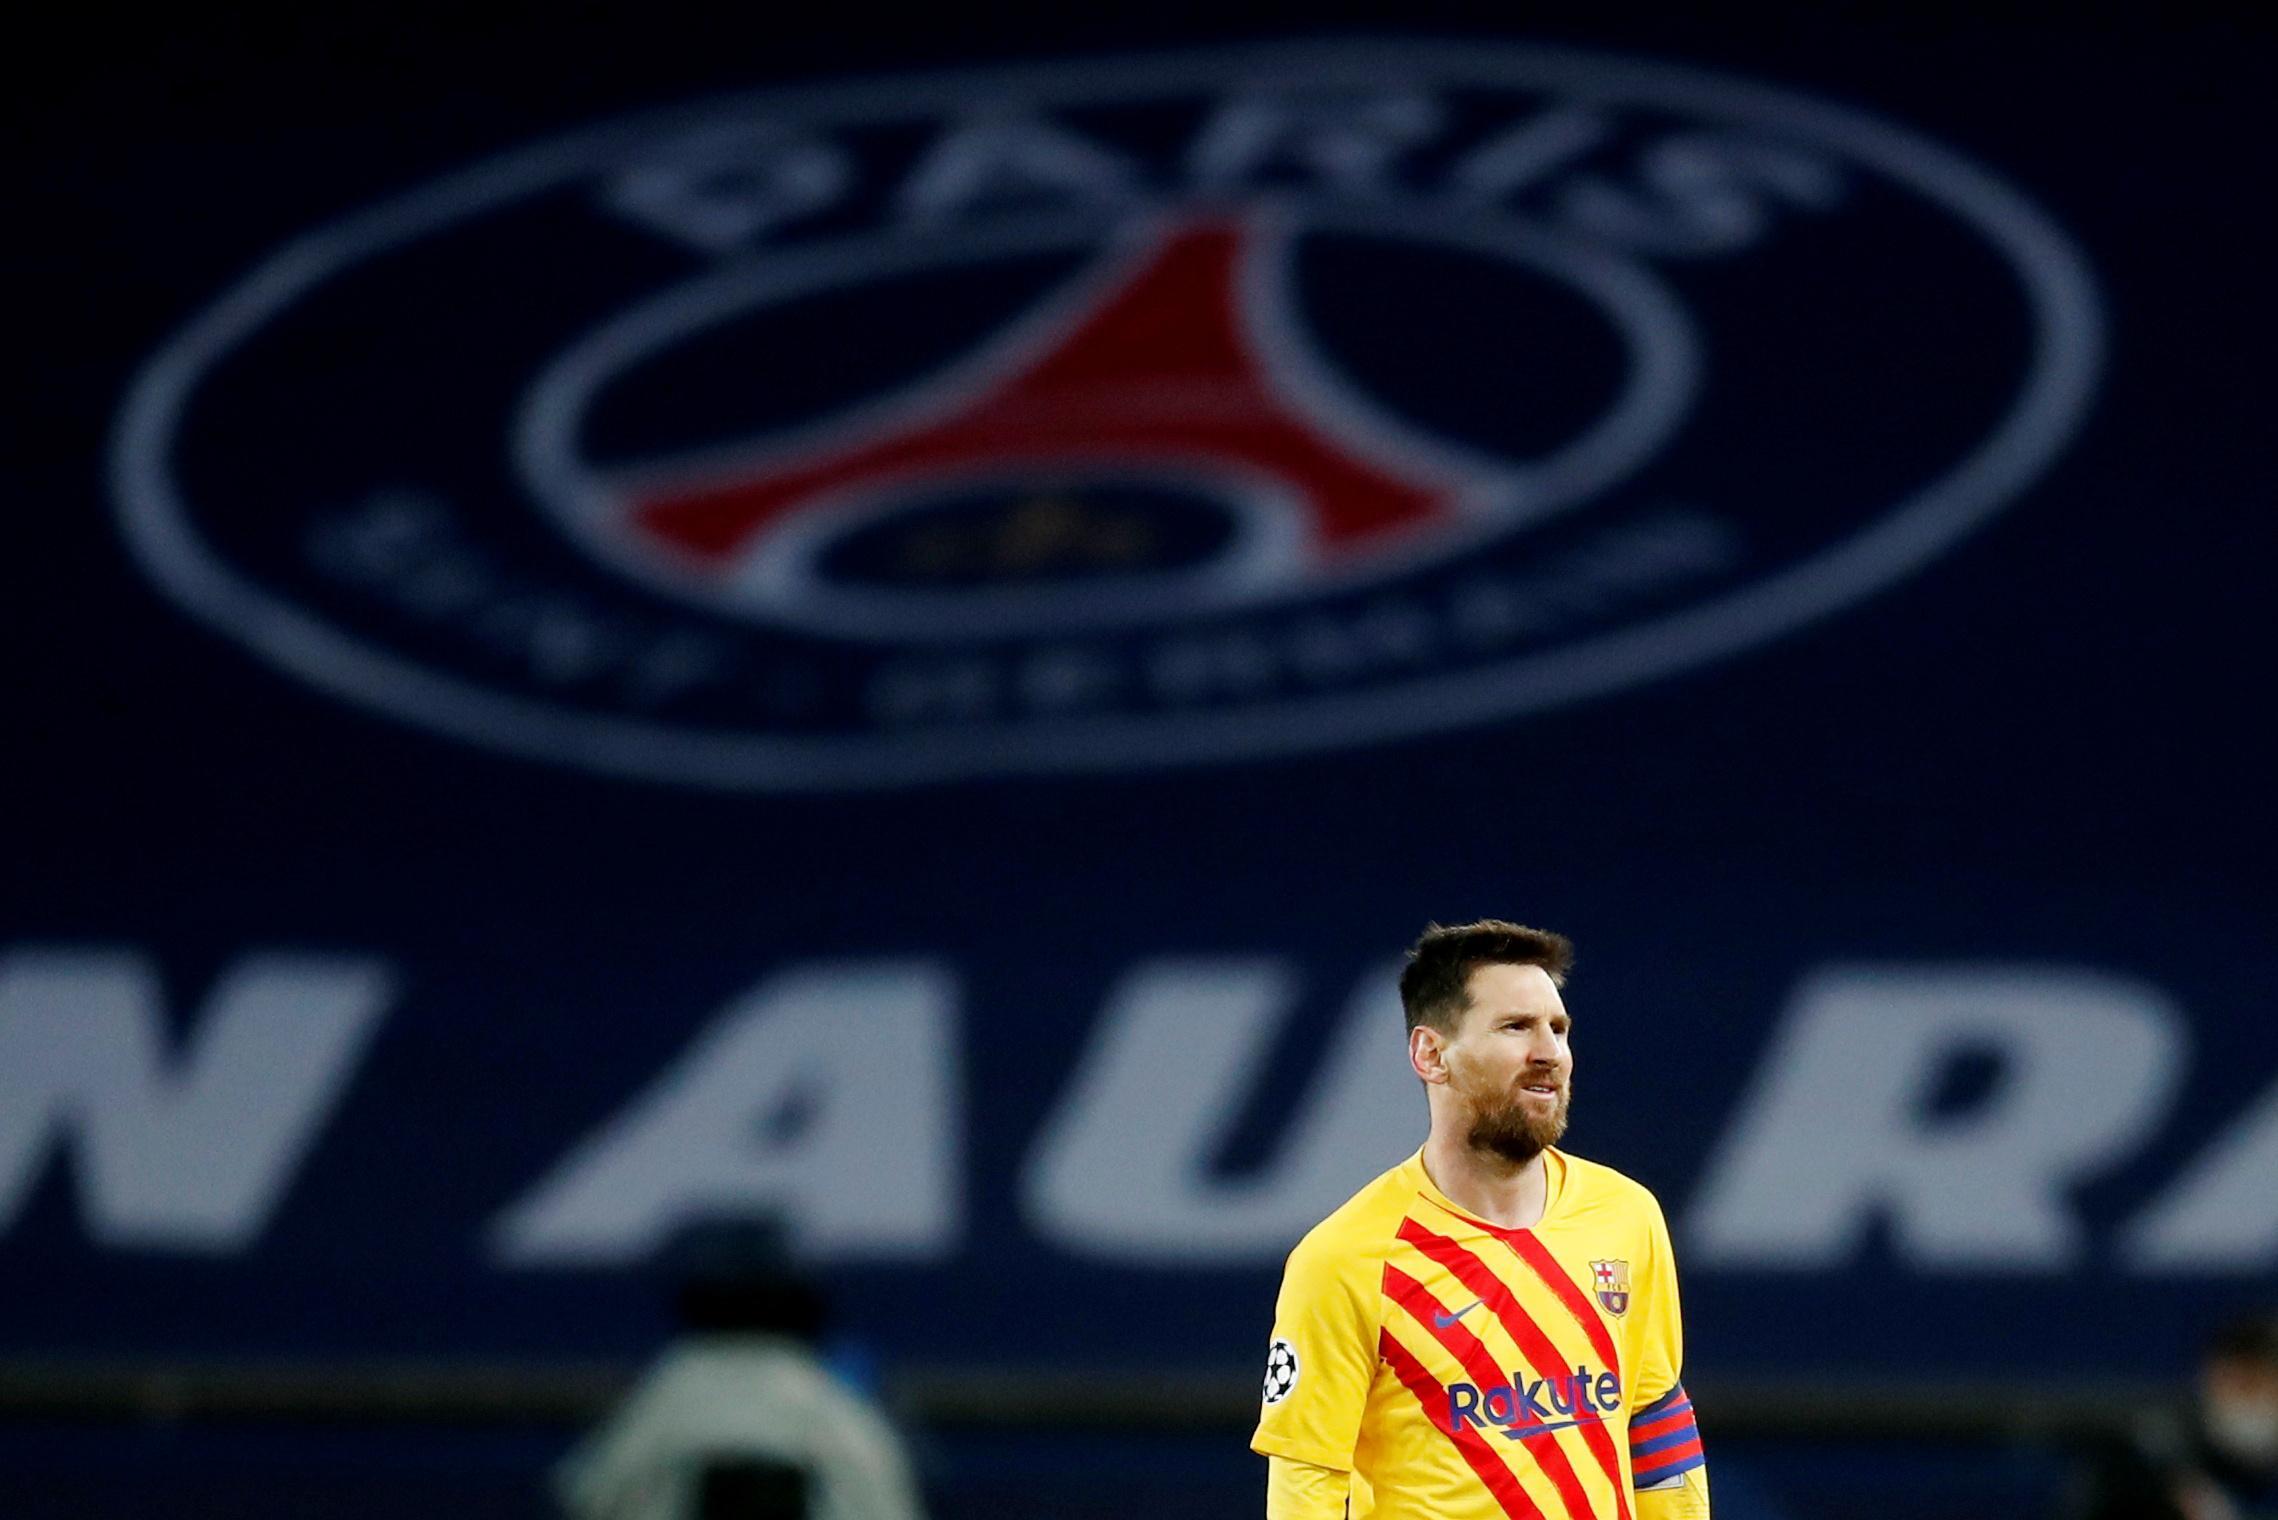 Messi pazartesi günü Paris Saint-Germain ile sözleşe imzalayacak